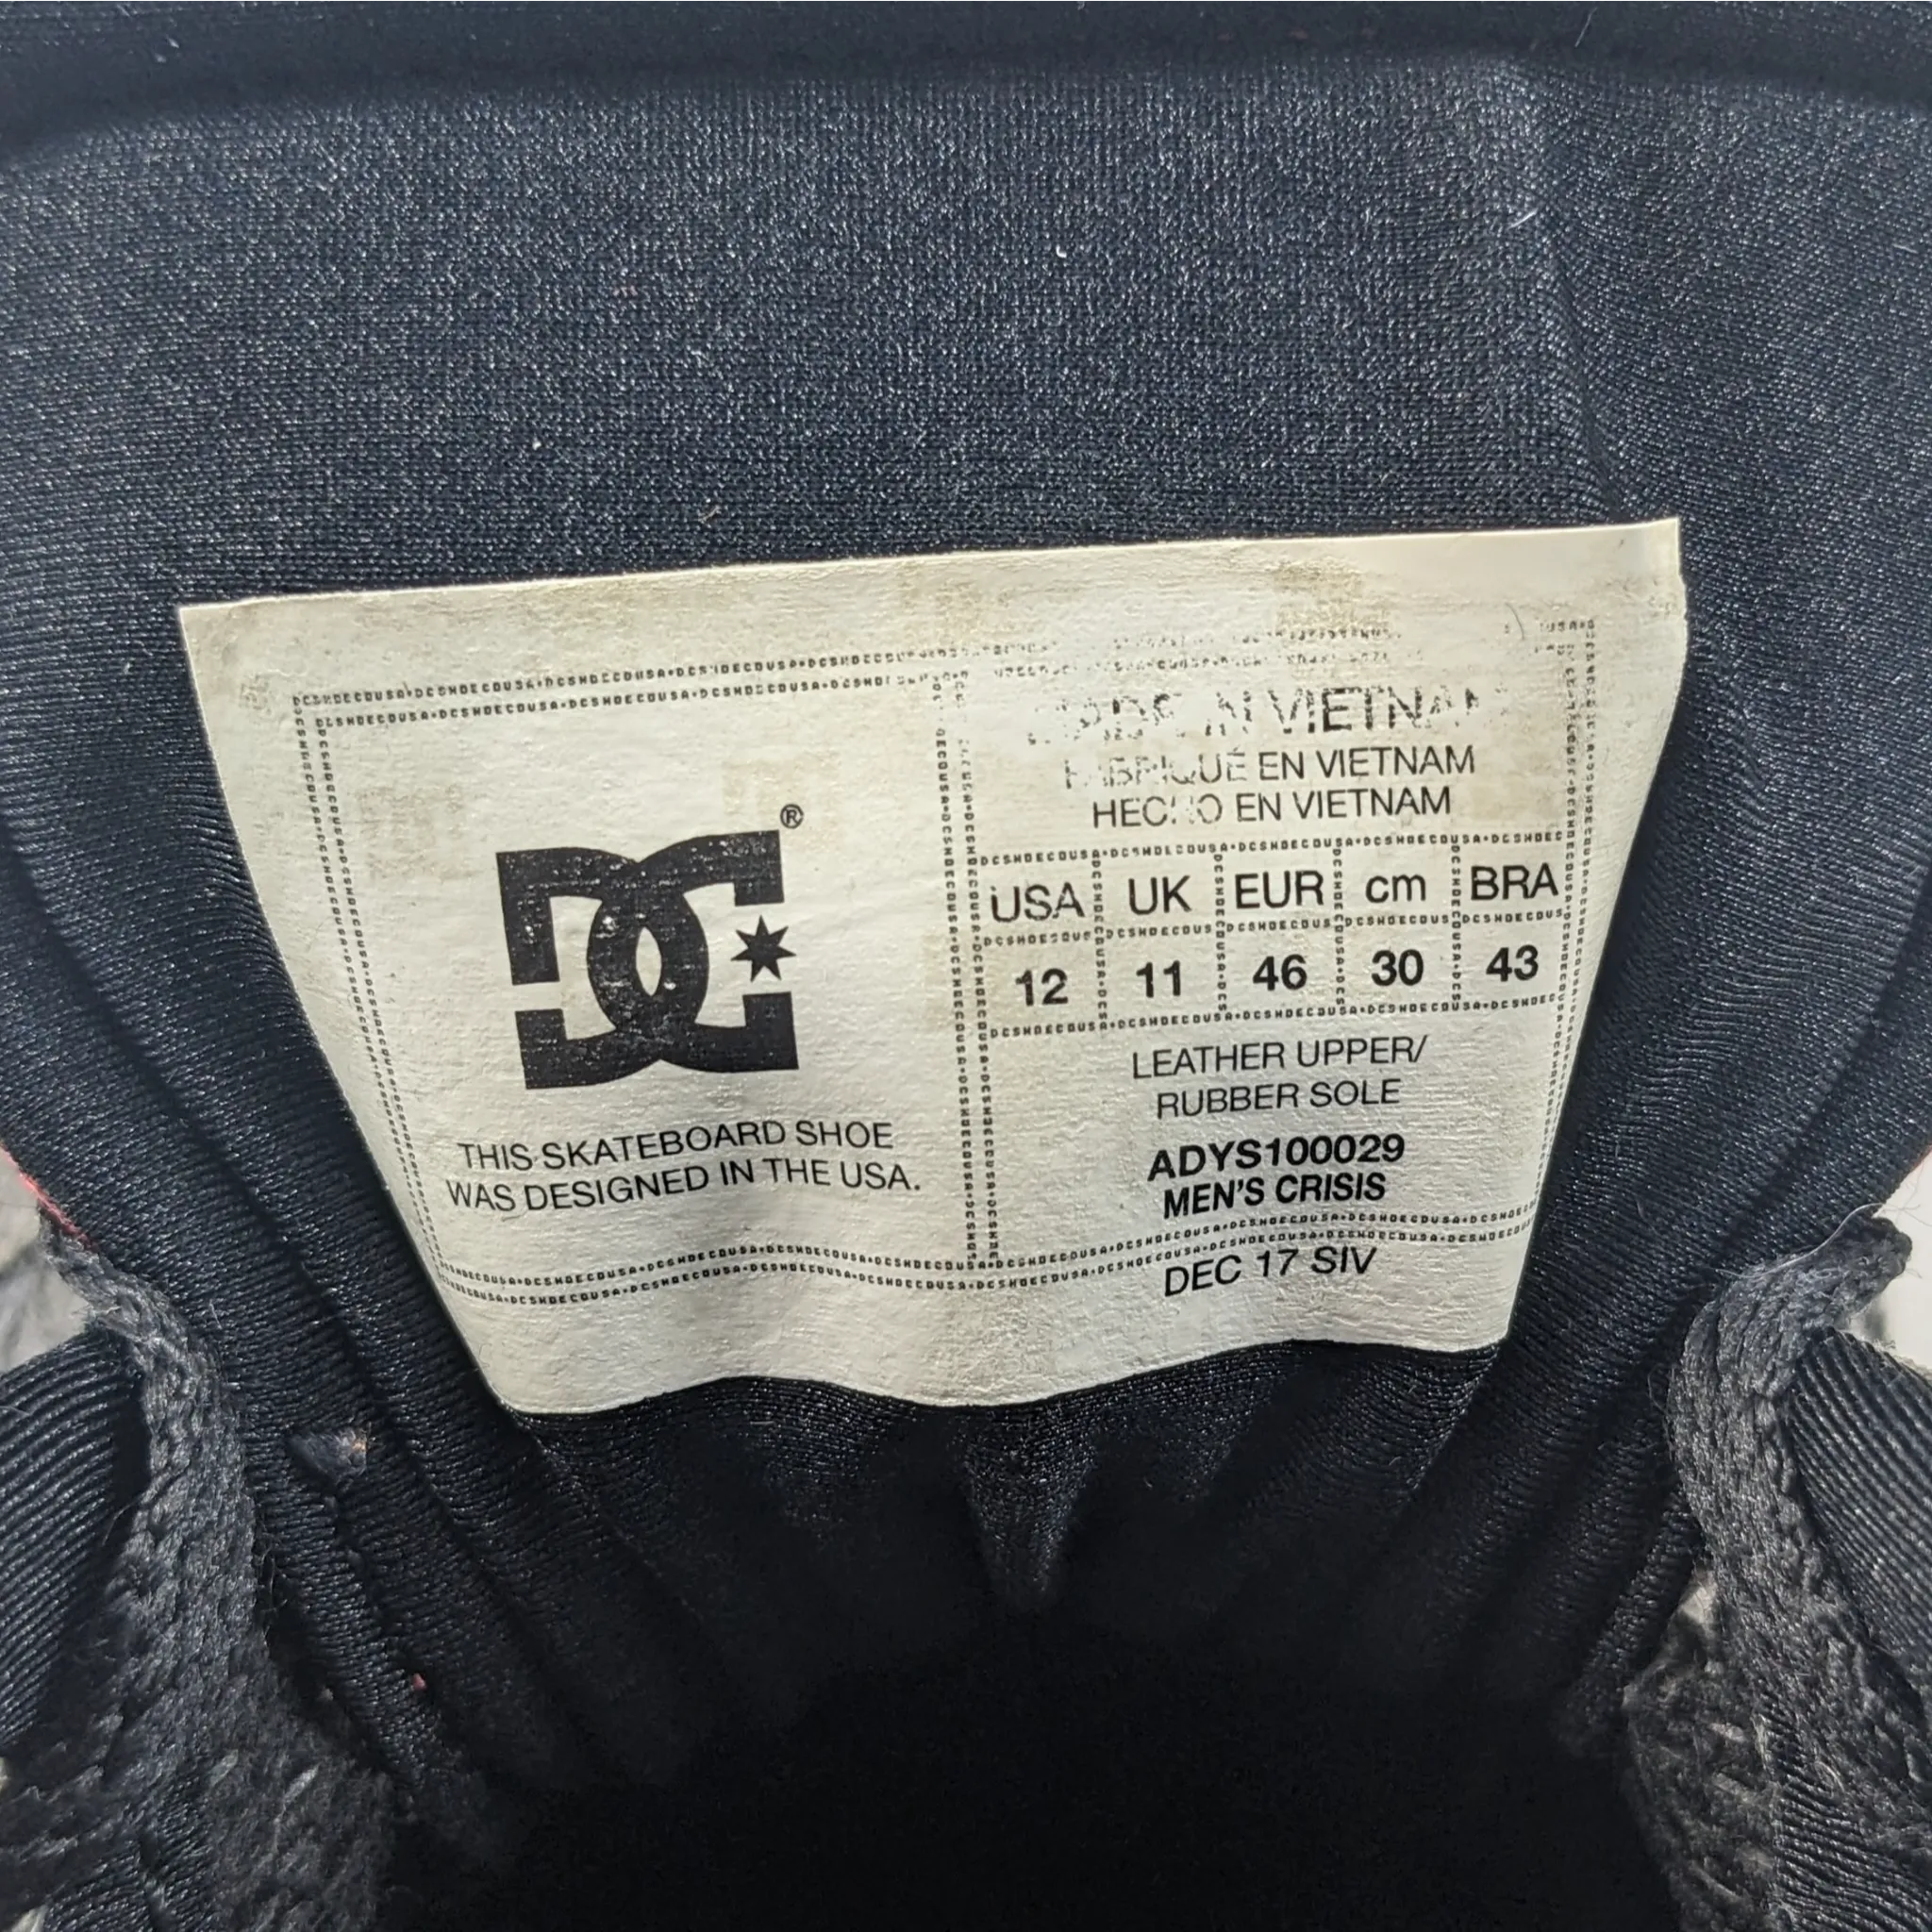 DG Grey Sneakers Premium O